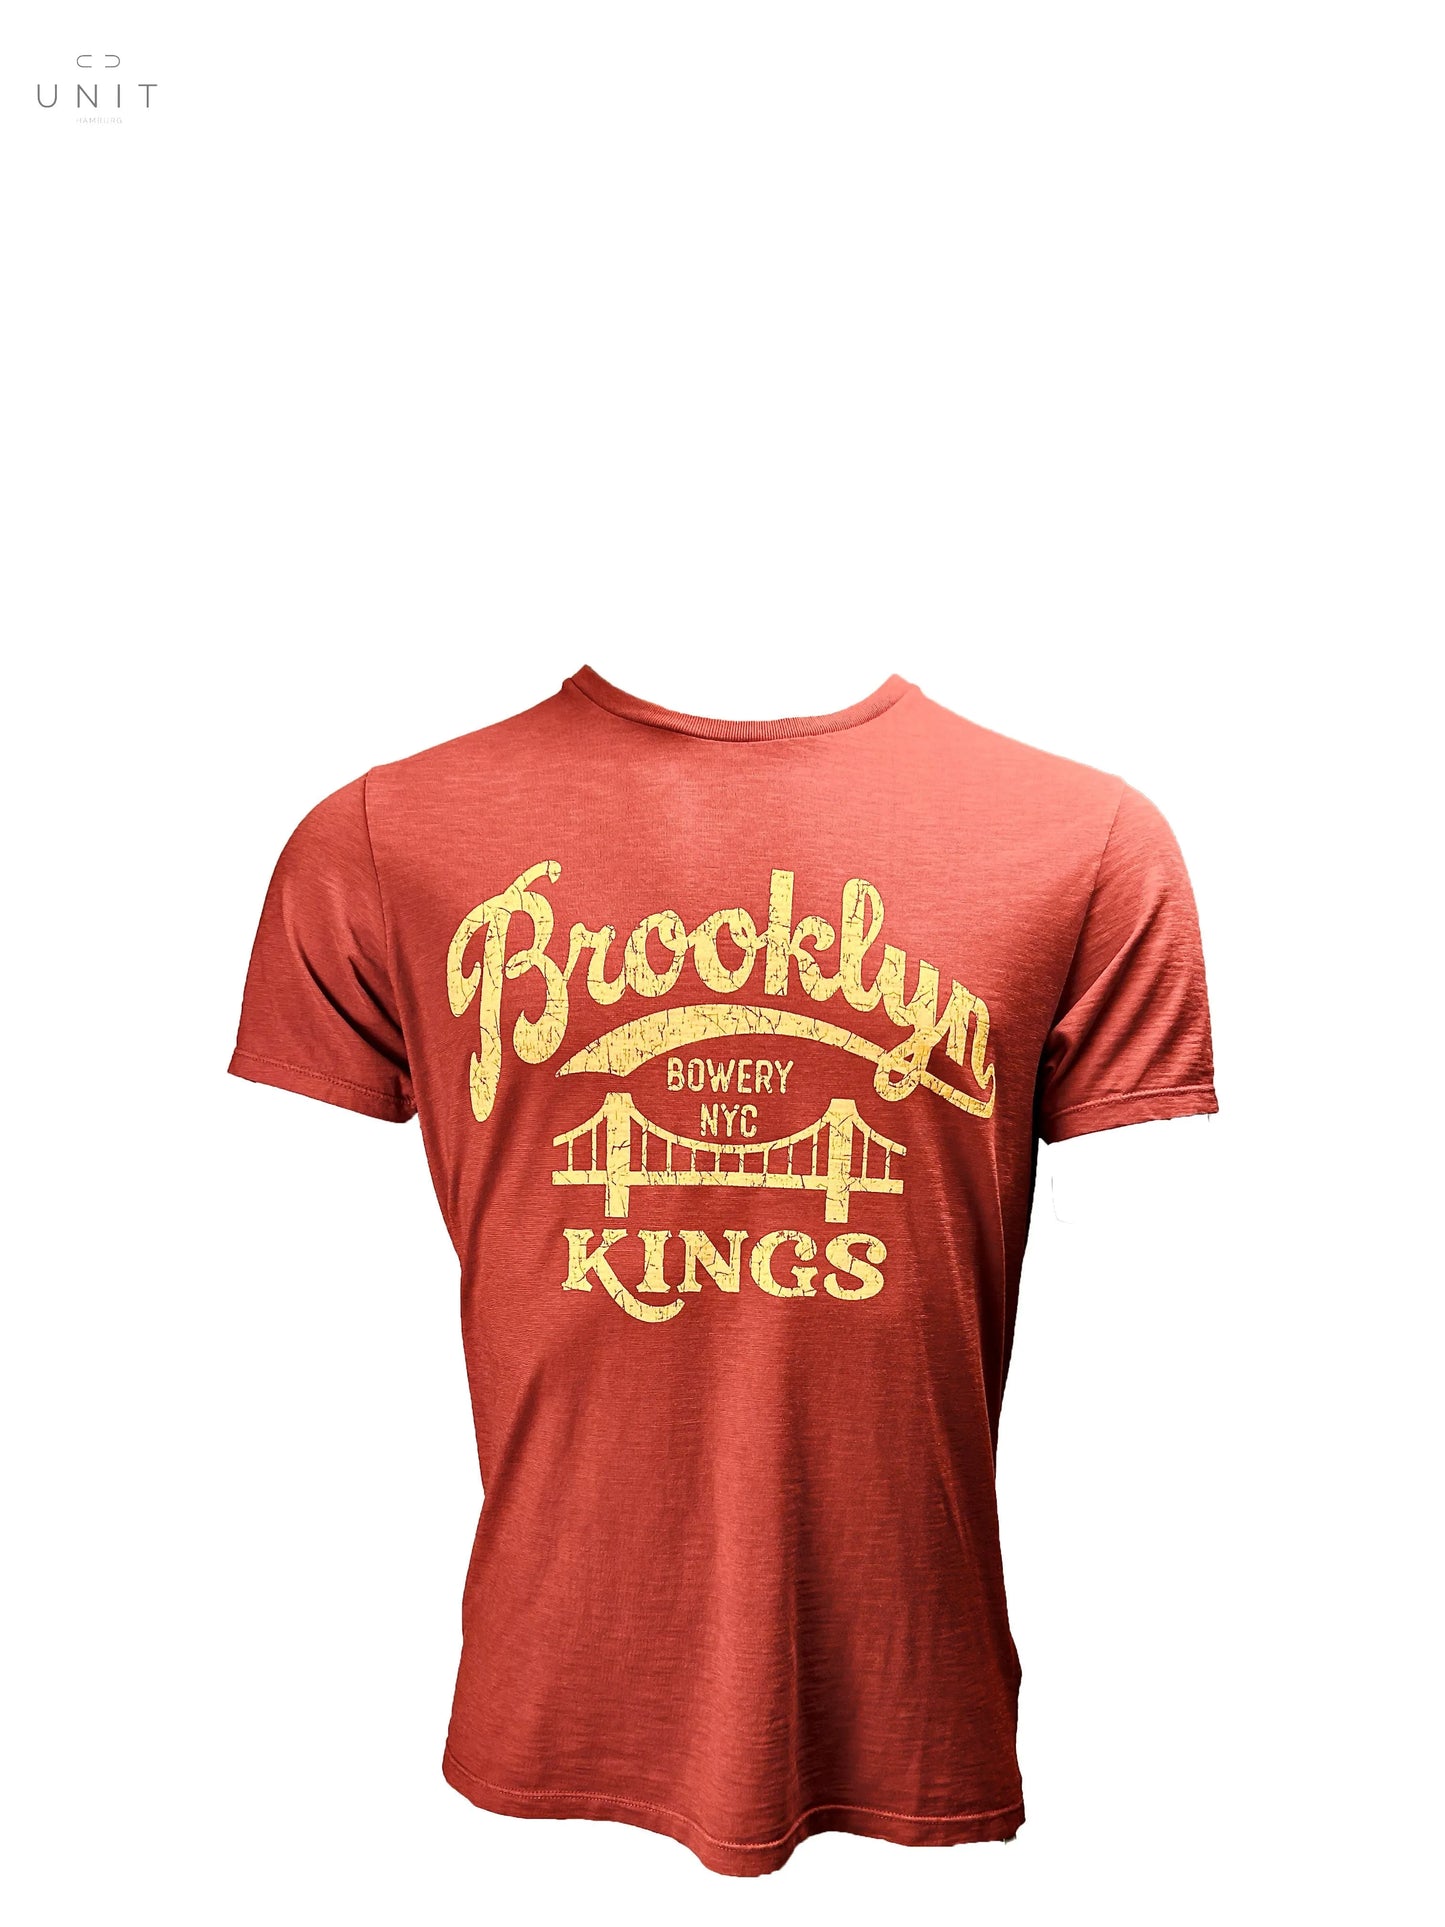 Bowery NYC, Brooklyn Kings Slub Jersey, T-Shirt, bitterorange Bowery NYC